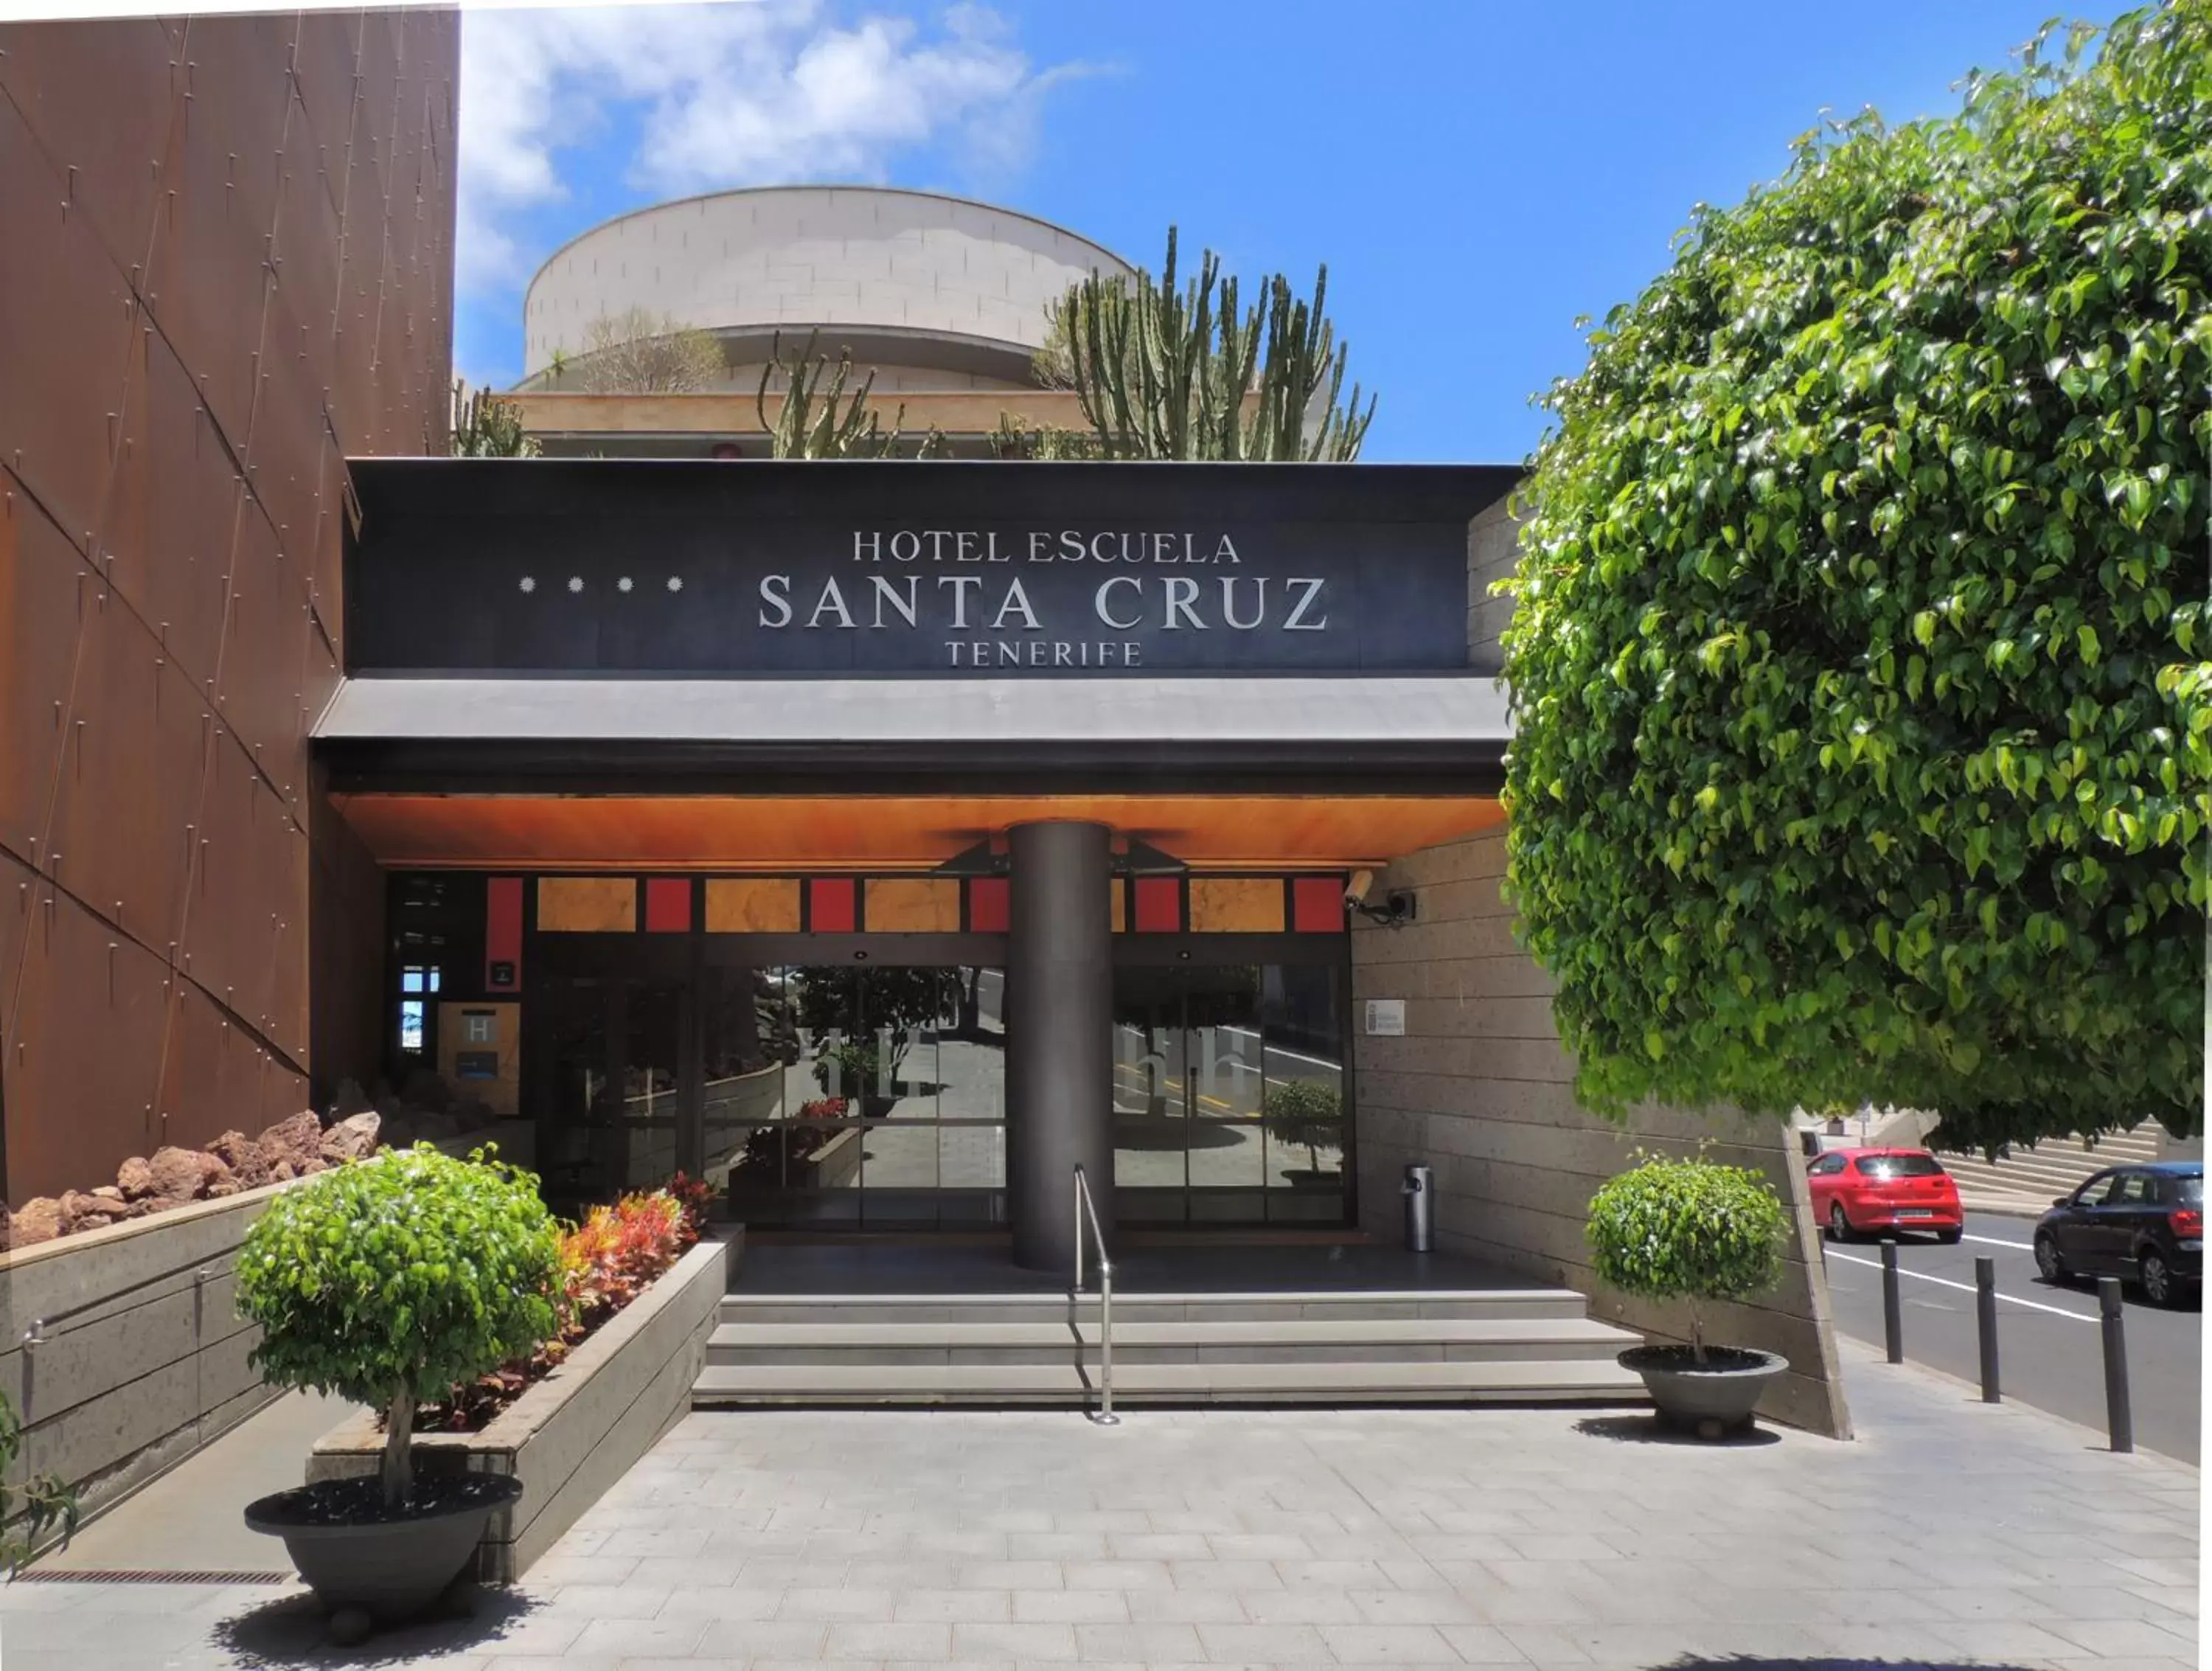 Facade/entrance in Hotel Escuela Santa Cruz